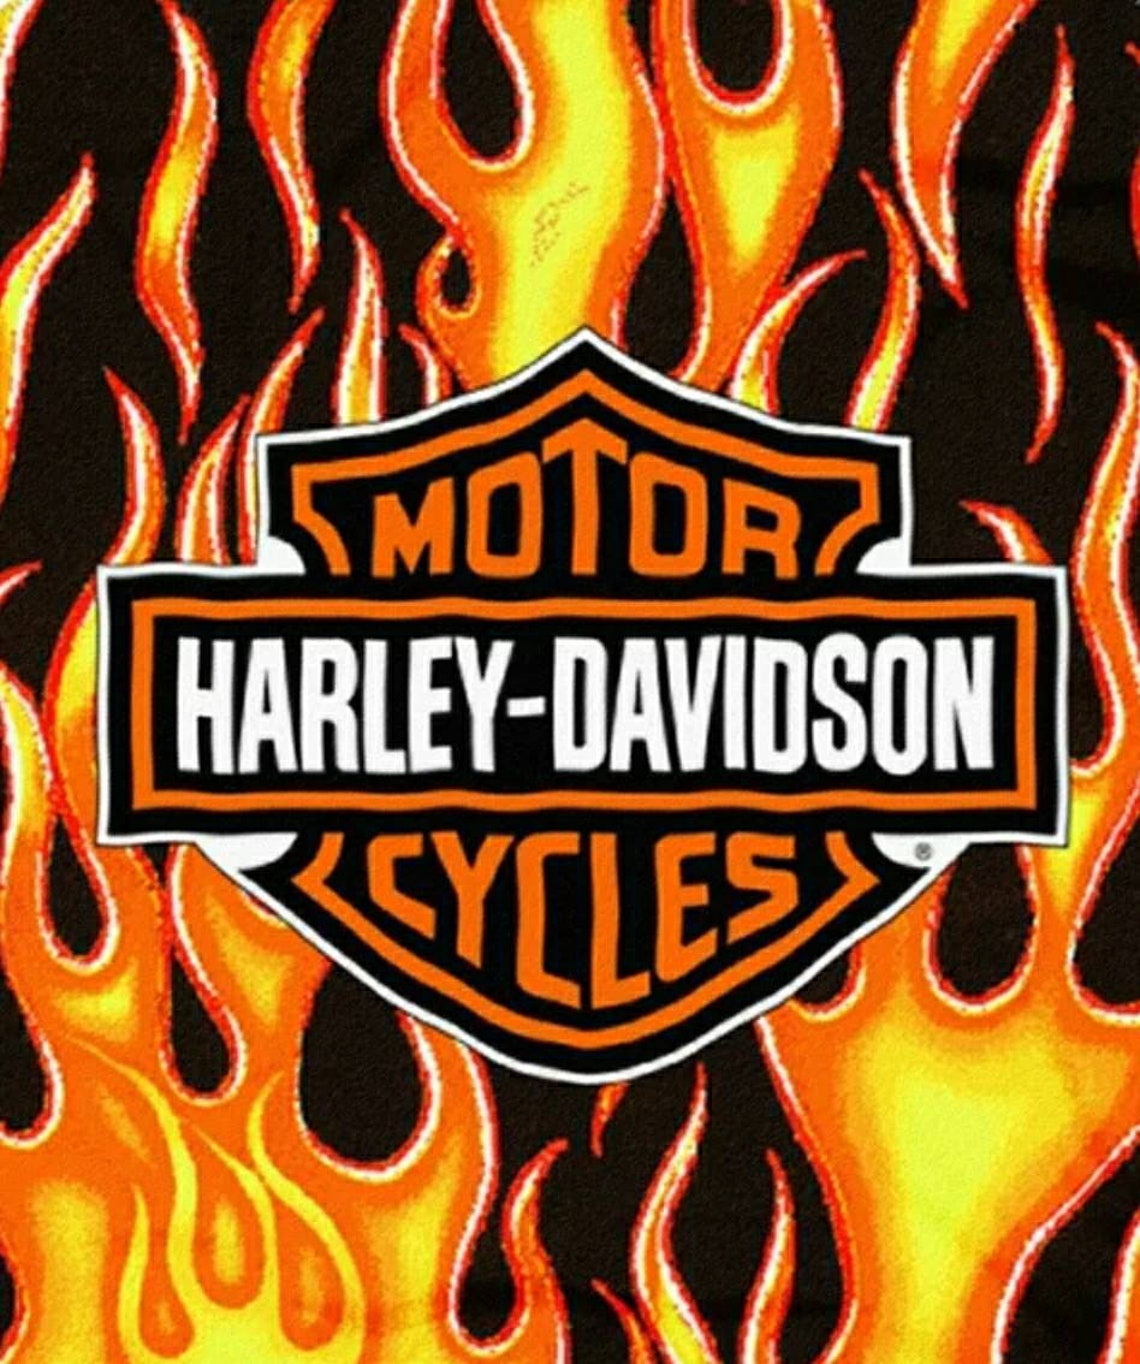 Harley Davidson Vinyl Decal 8x10 sticker | Etsy